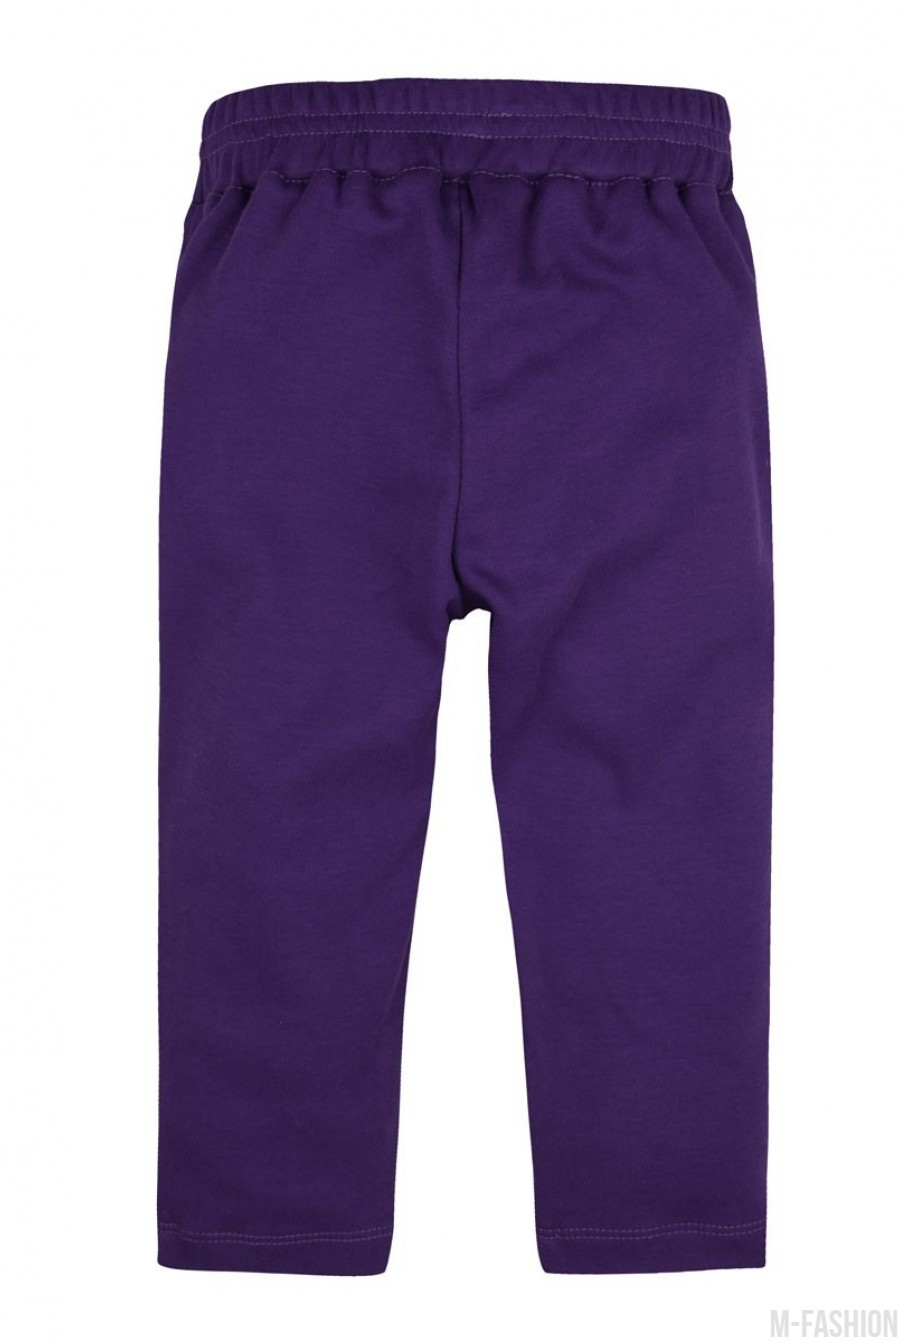 Трикотажные фиолетовые спортивные штаны на резинке- Фото 3